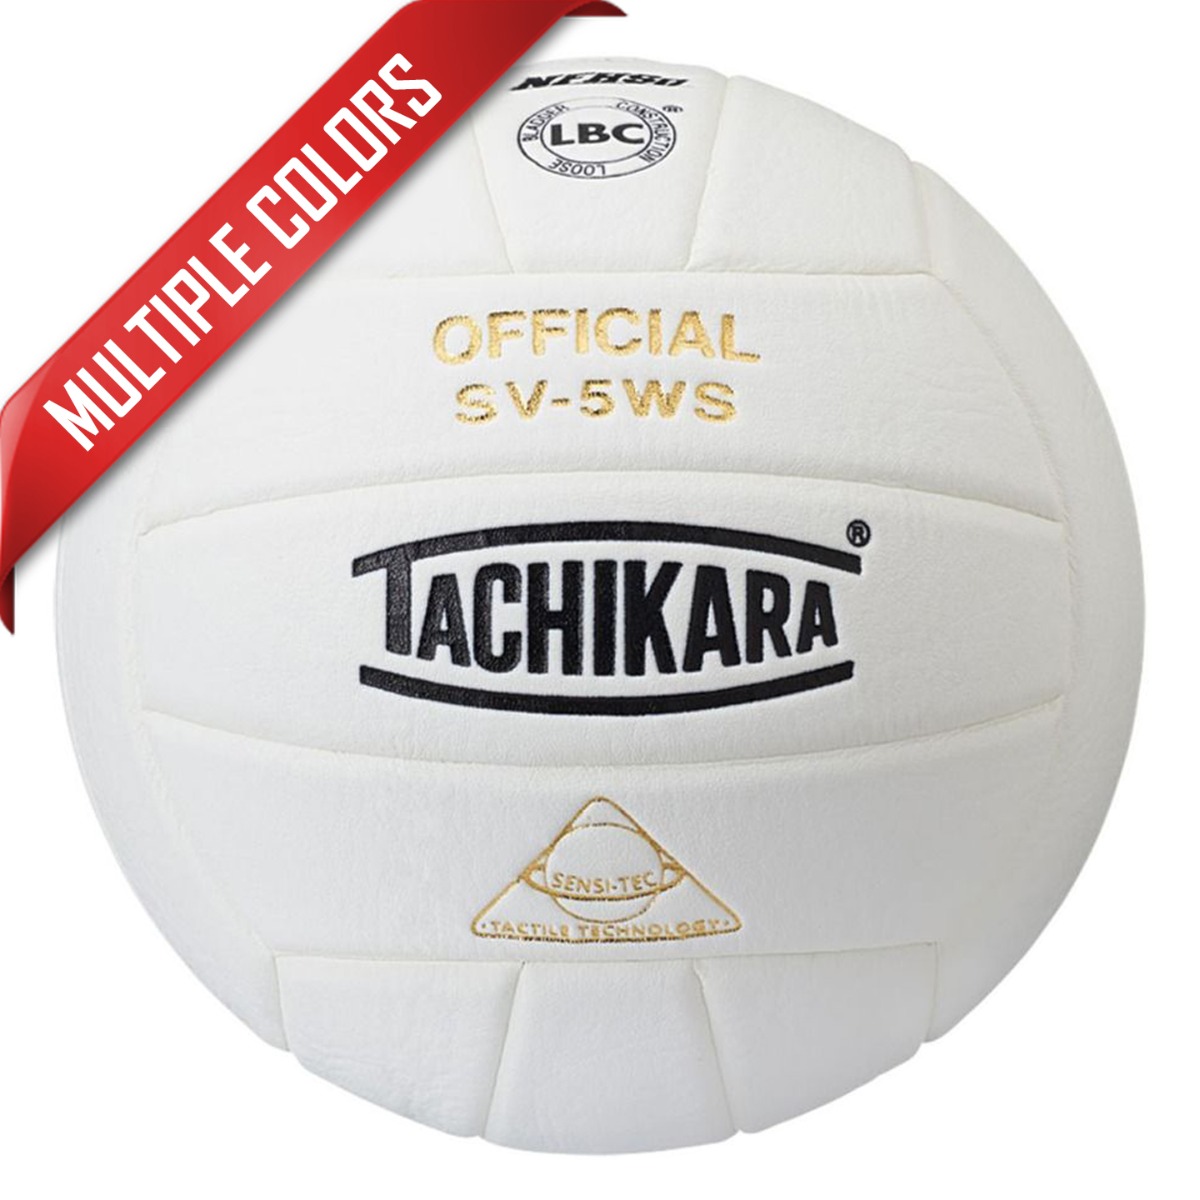 Tachikara SV5WSC Composite Volleyballs